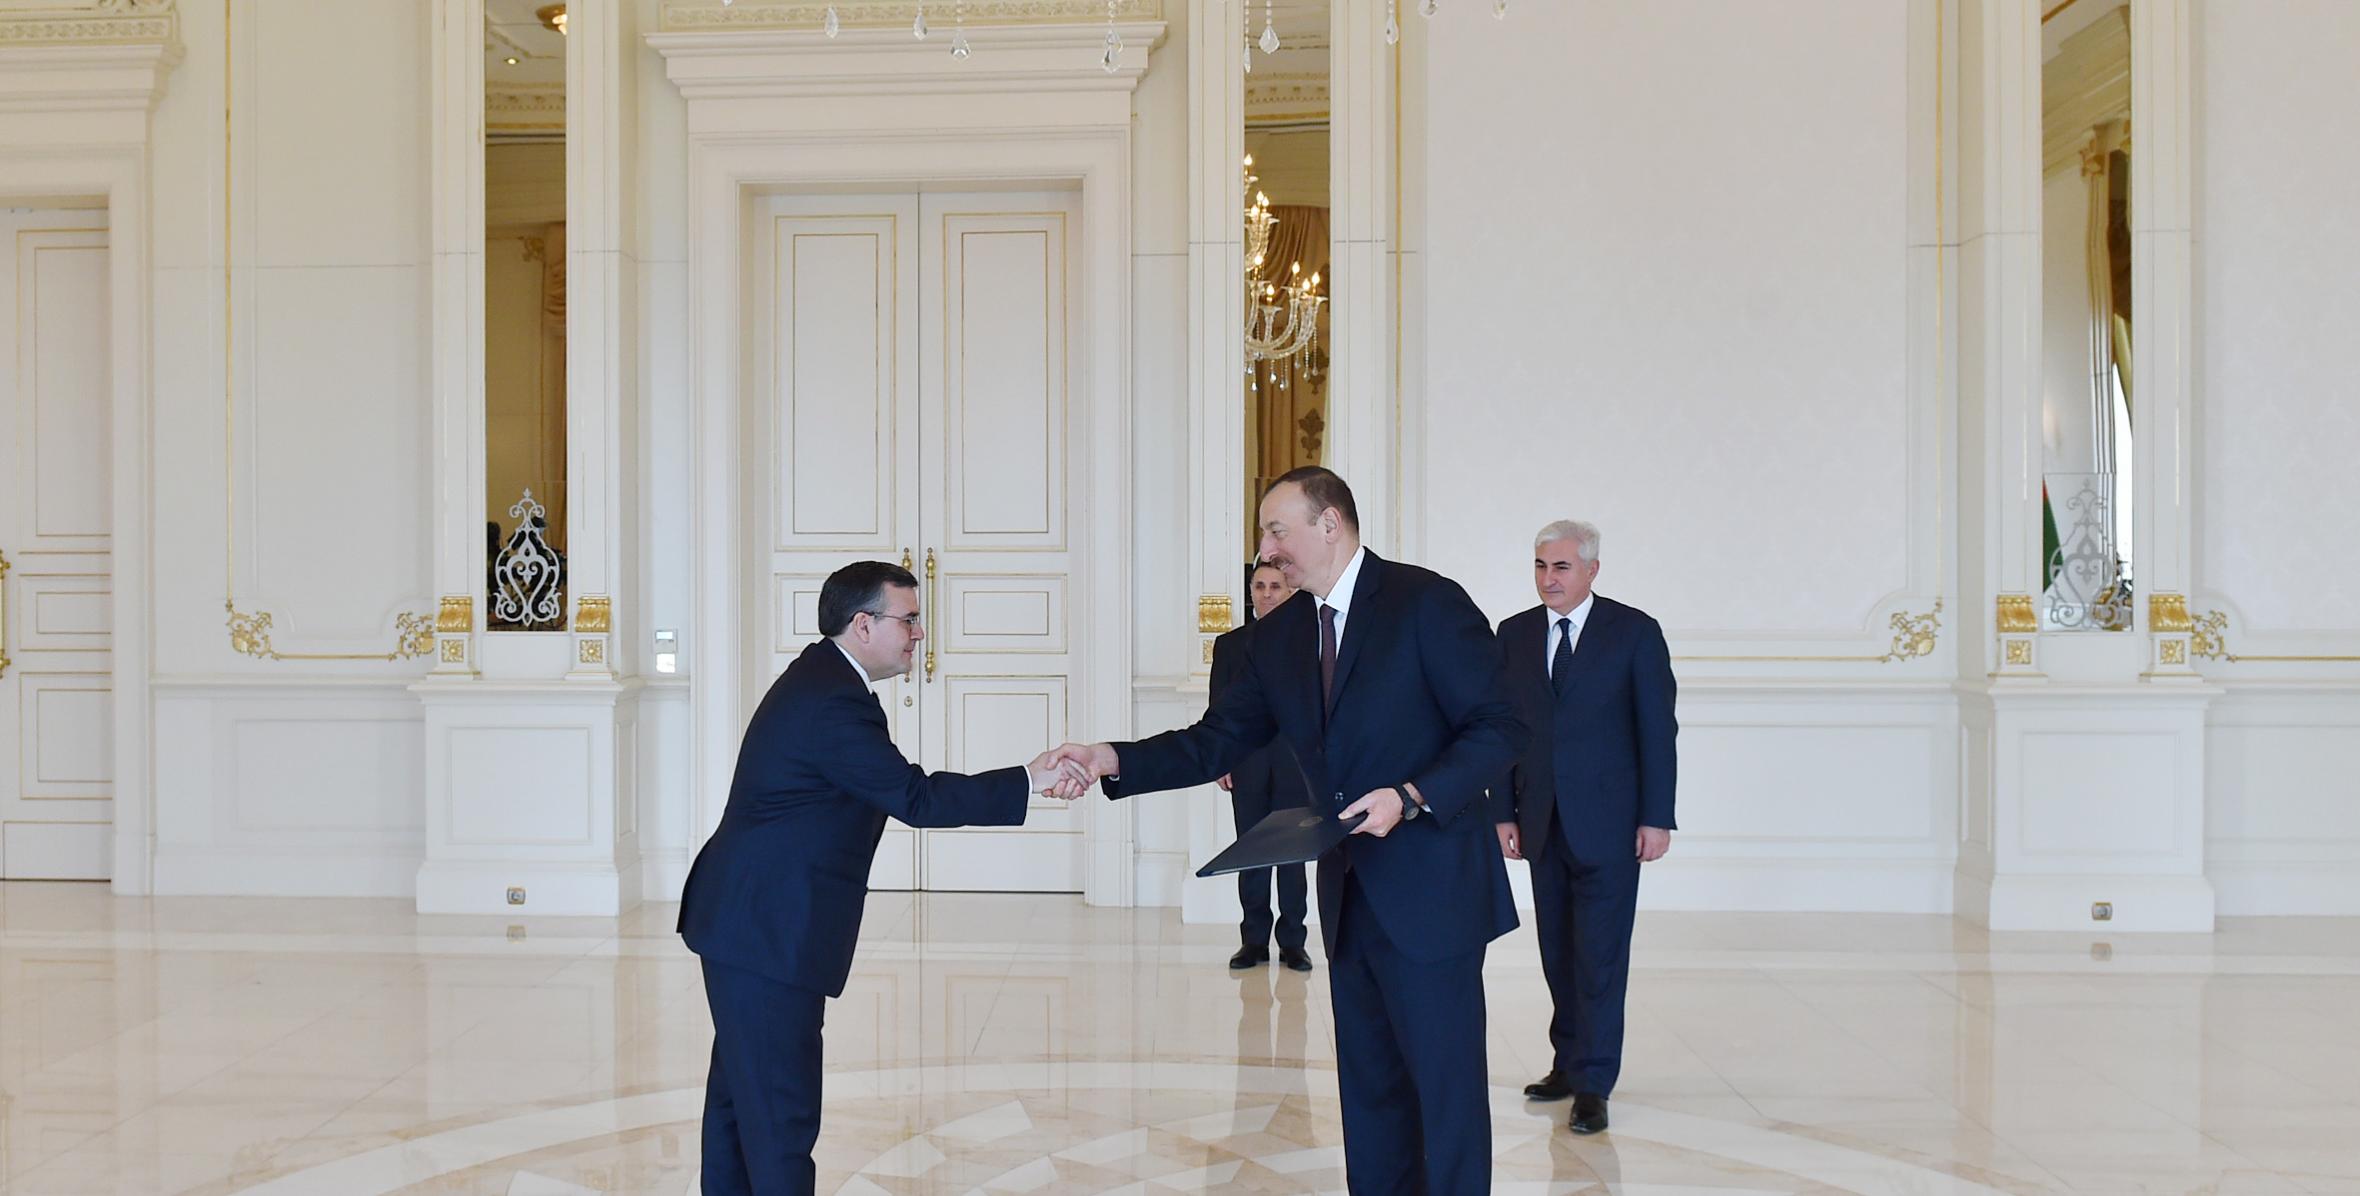 Ильхам Алиев принял верительные грамоты новоназначенного посла Восточной Республики Уругвай в Азербайджане